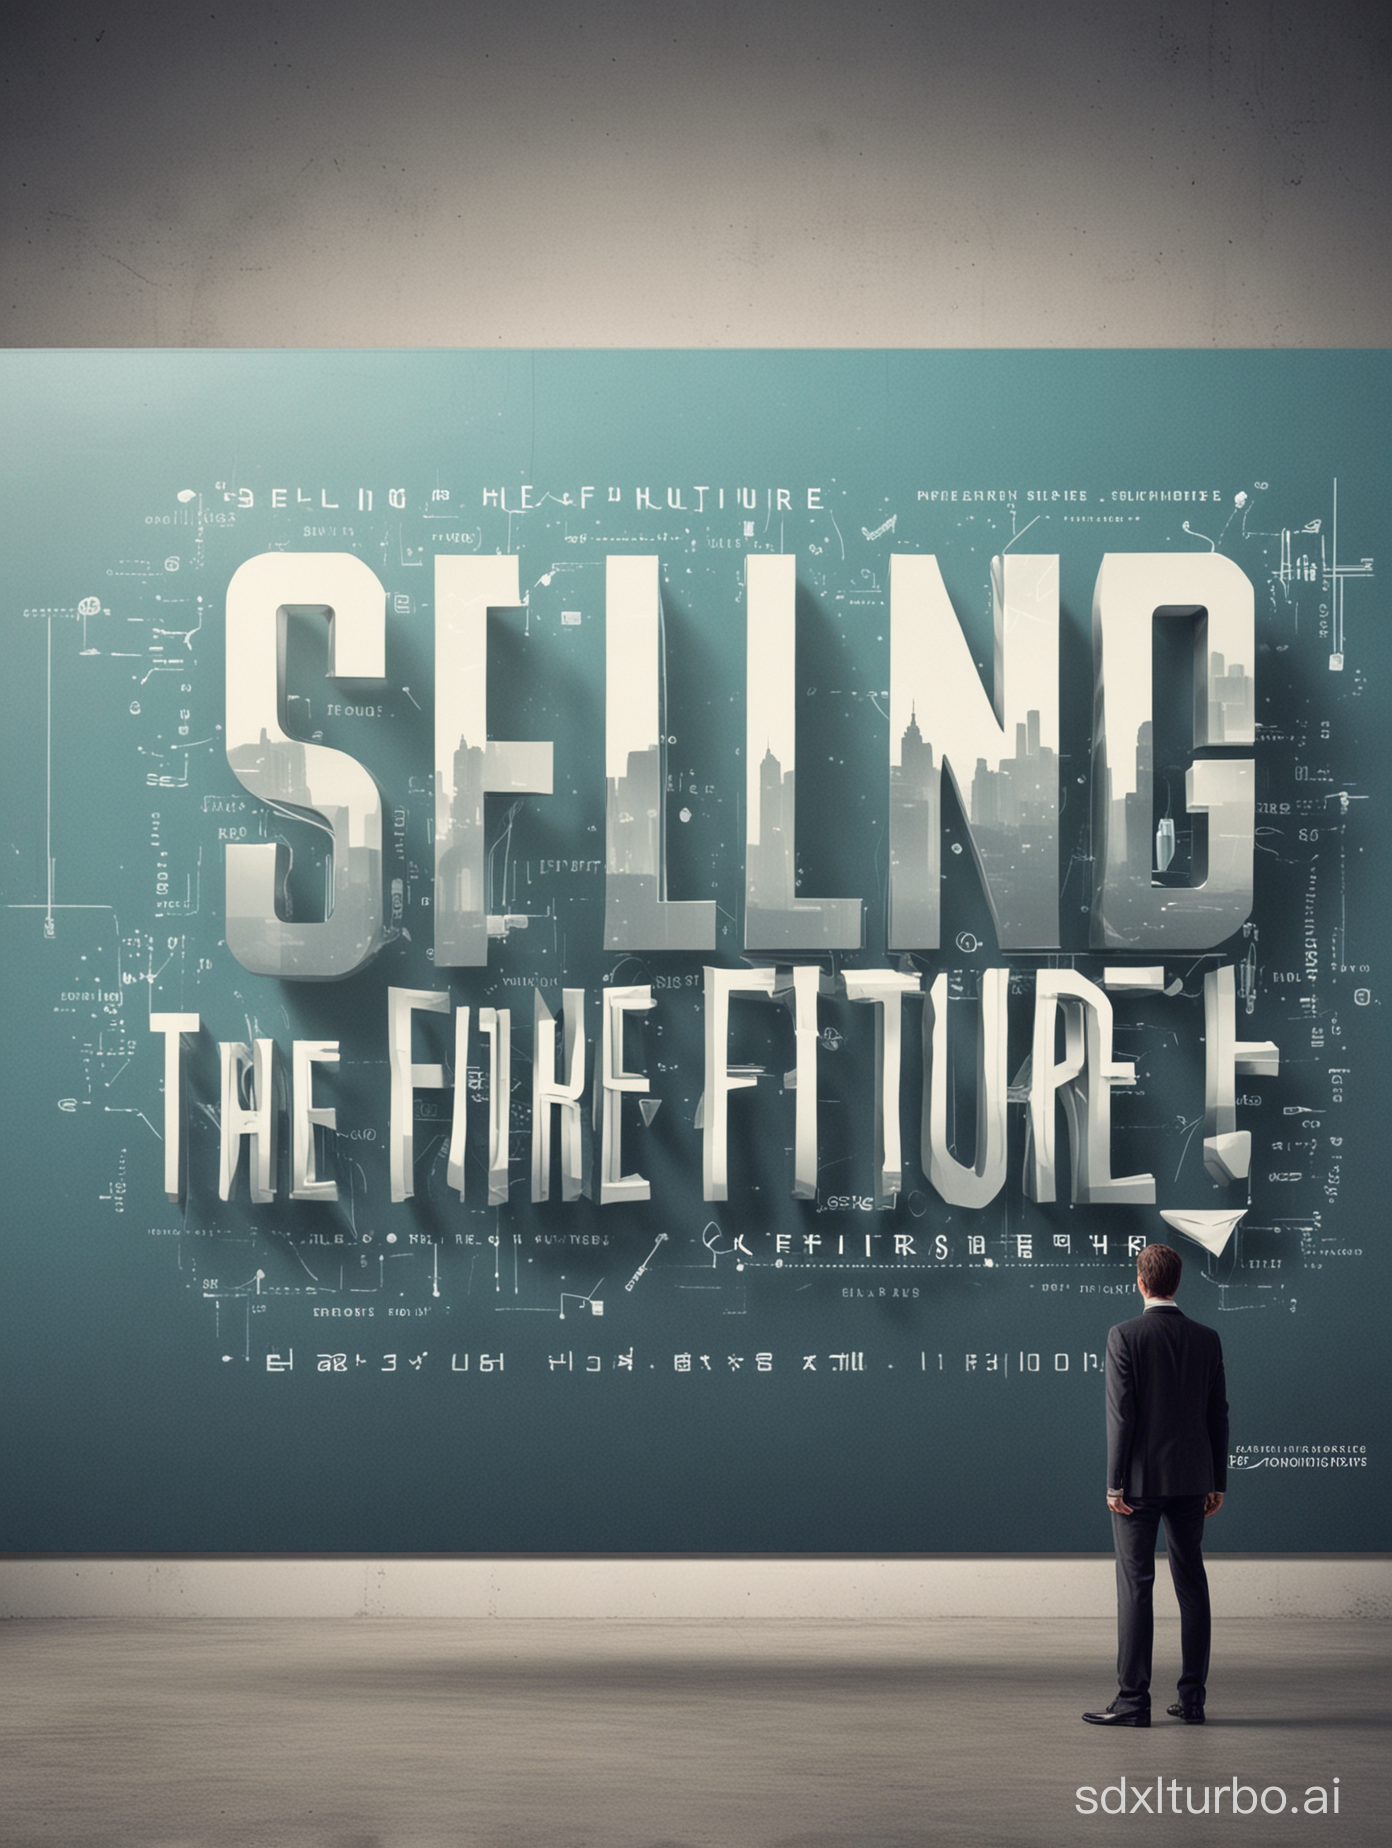 create grafic "Verkaufen der Zukunft"